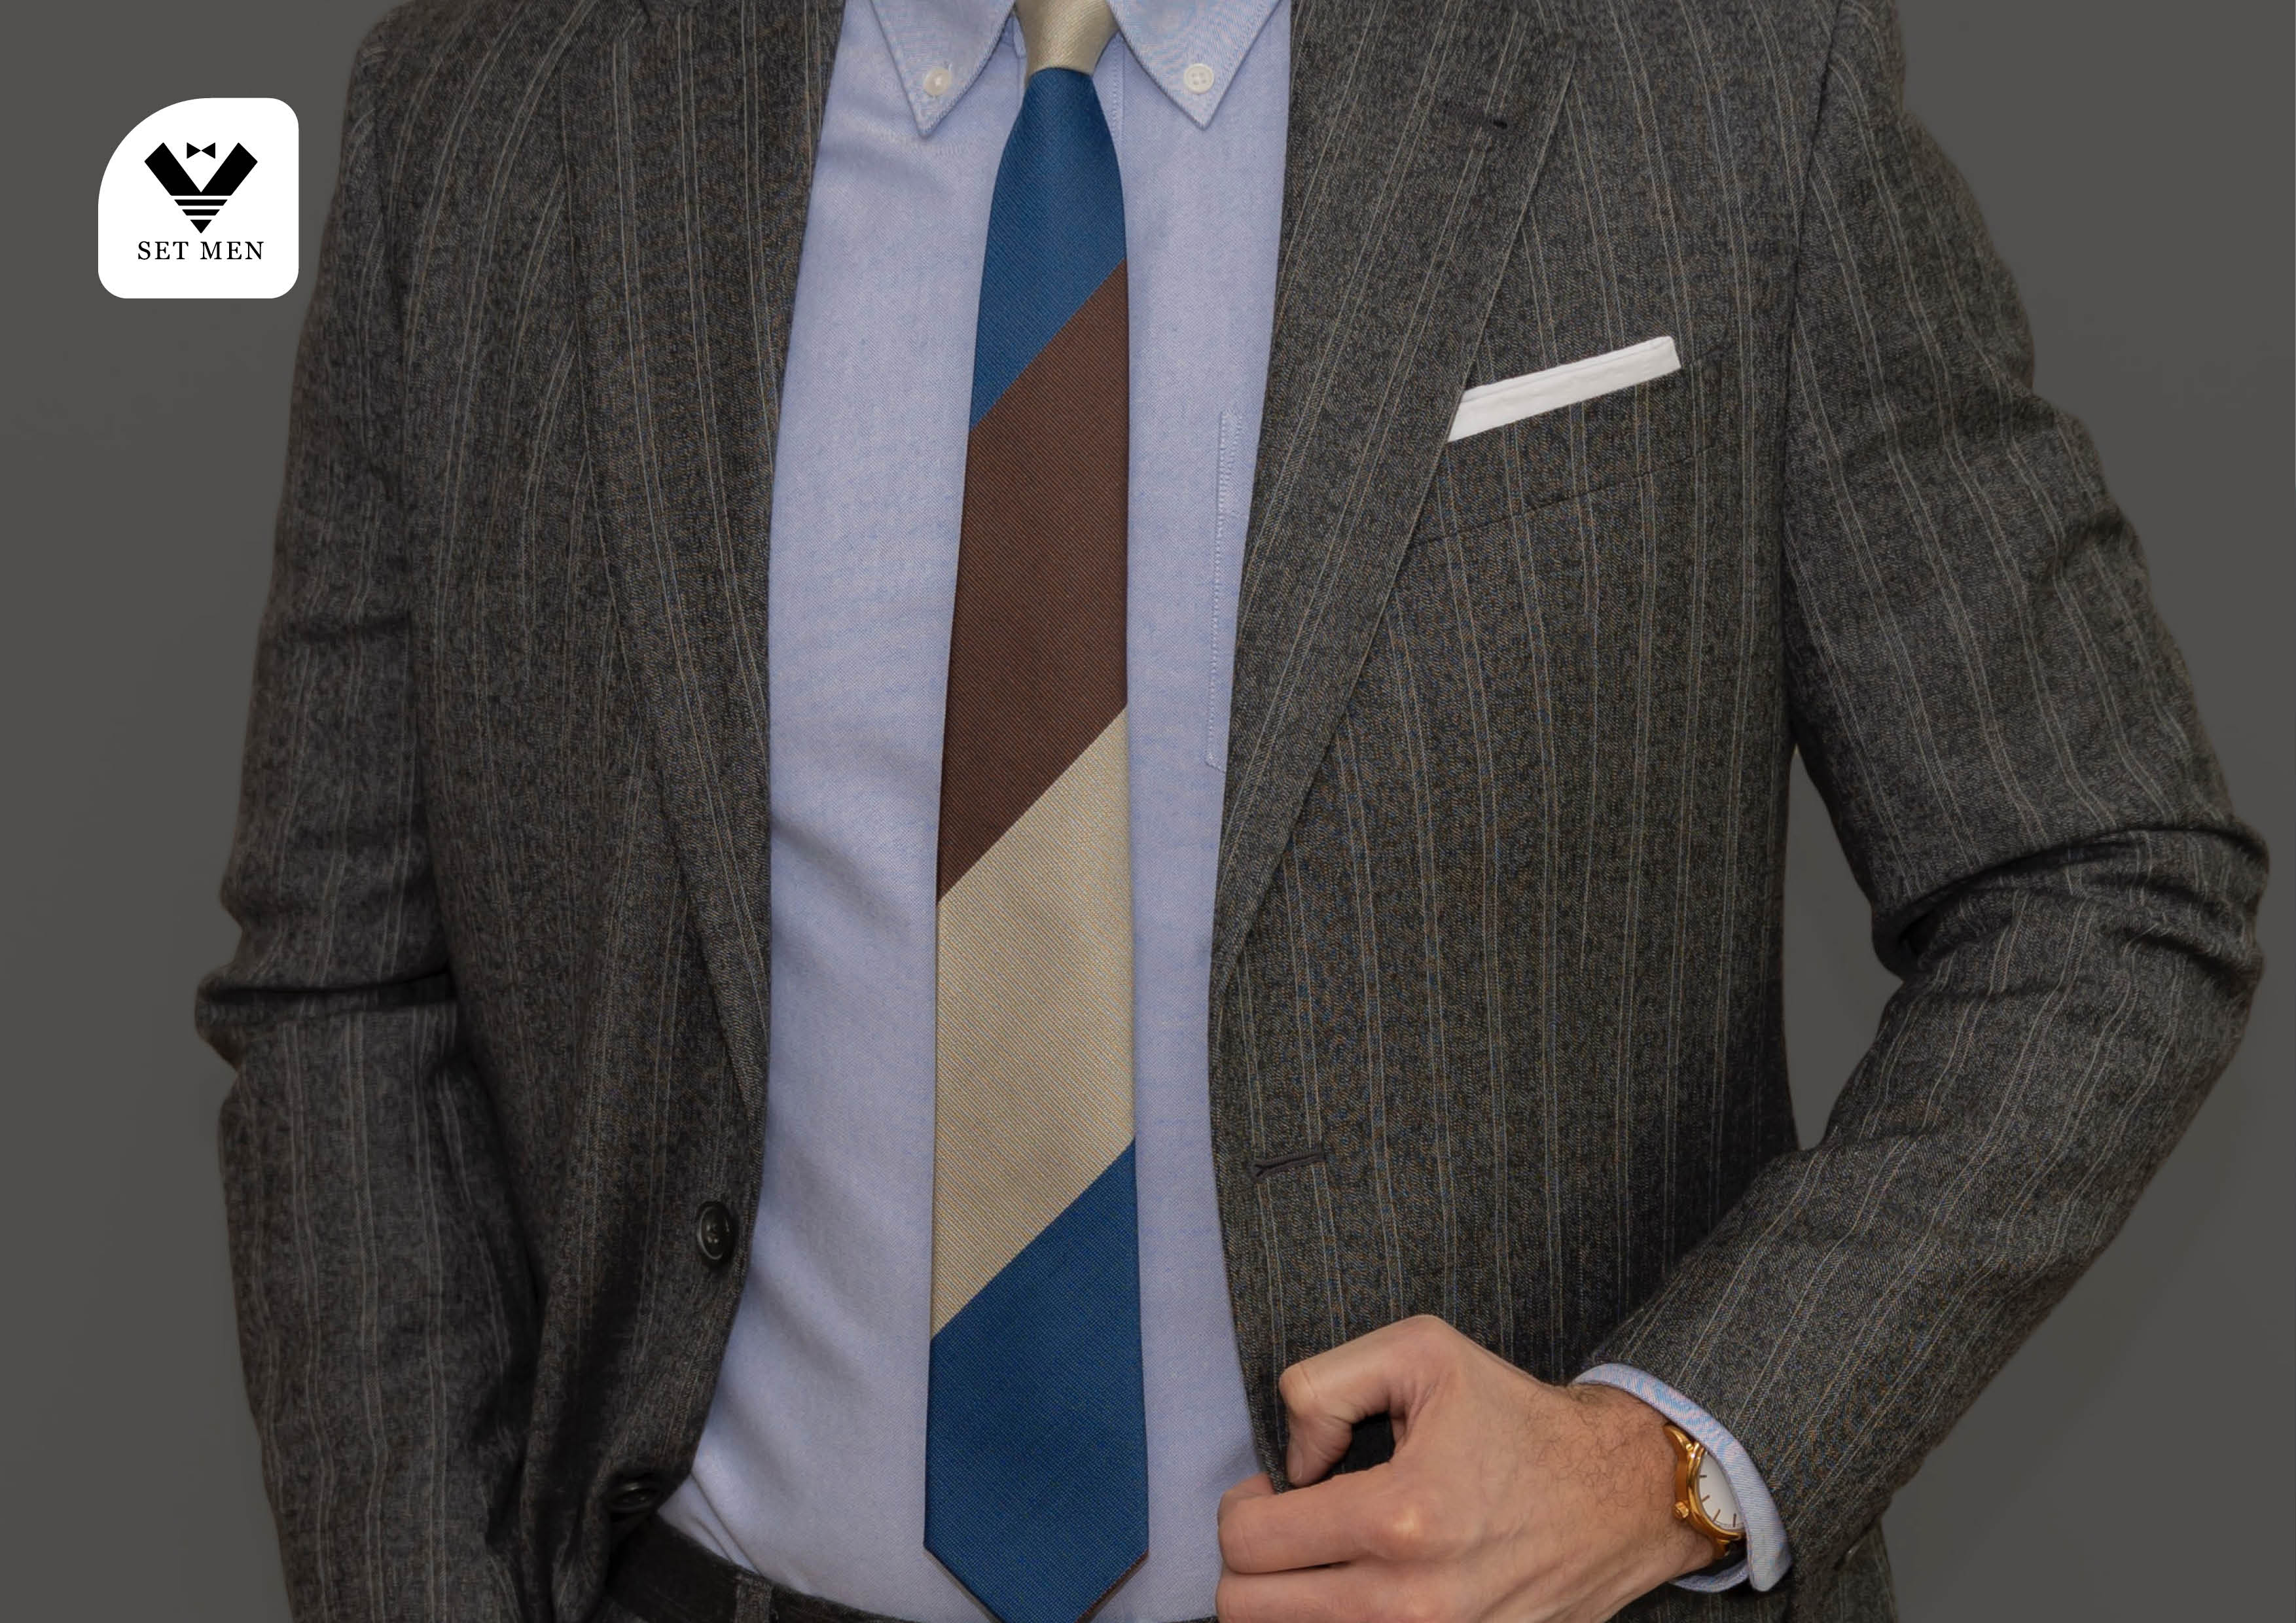 نکاتی که آقایان باید در مورد کراوات بدانند